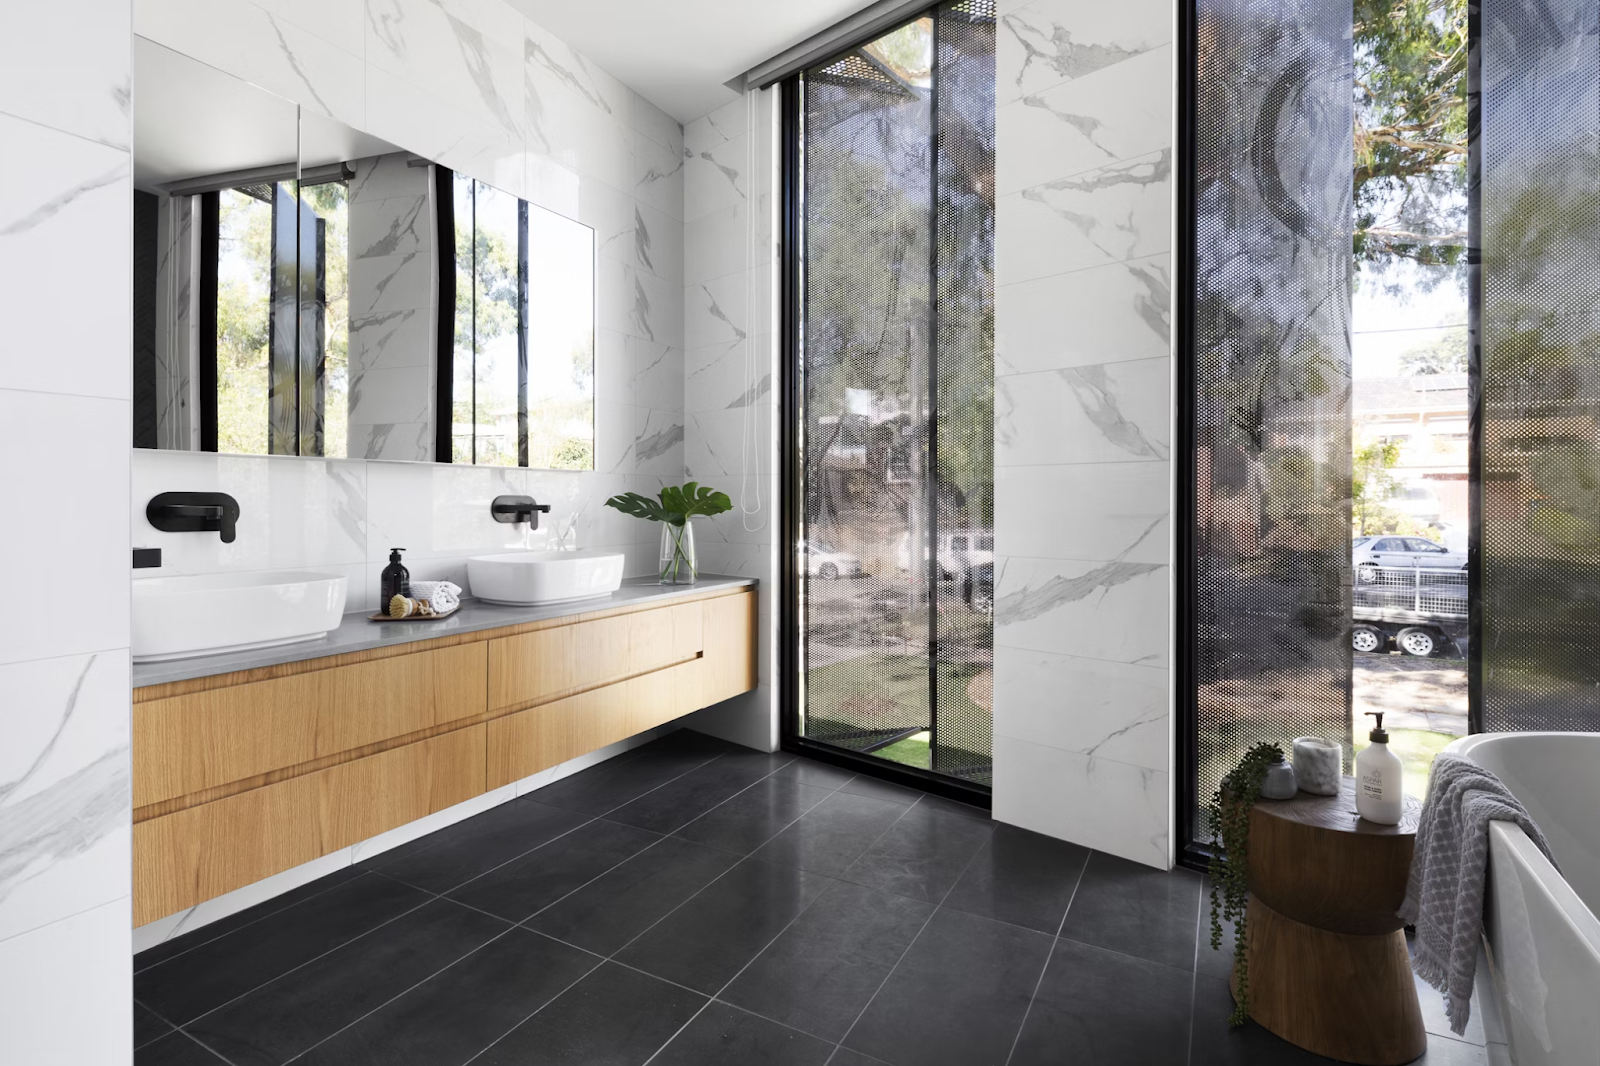 10 Inspirerende ideeën voor badkamerspiegels om uw ruimte naar een hoger niveau te tillen